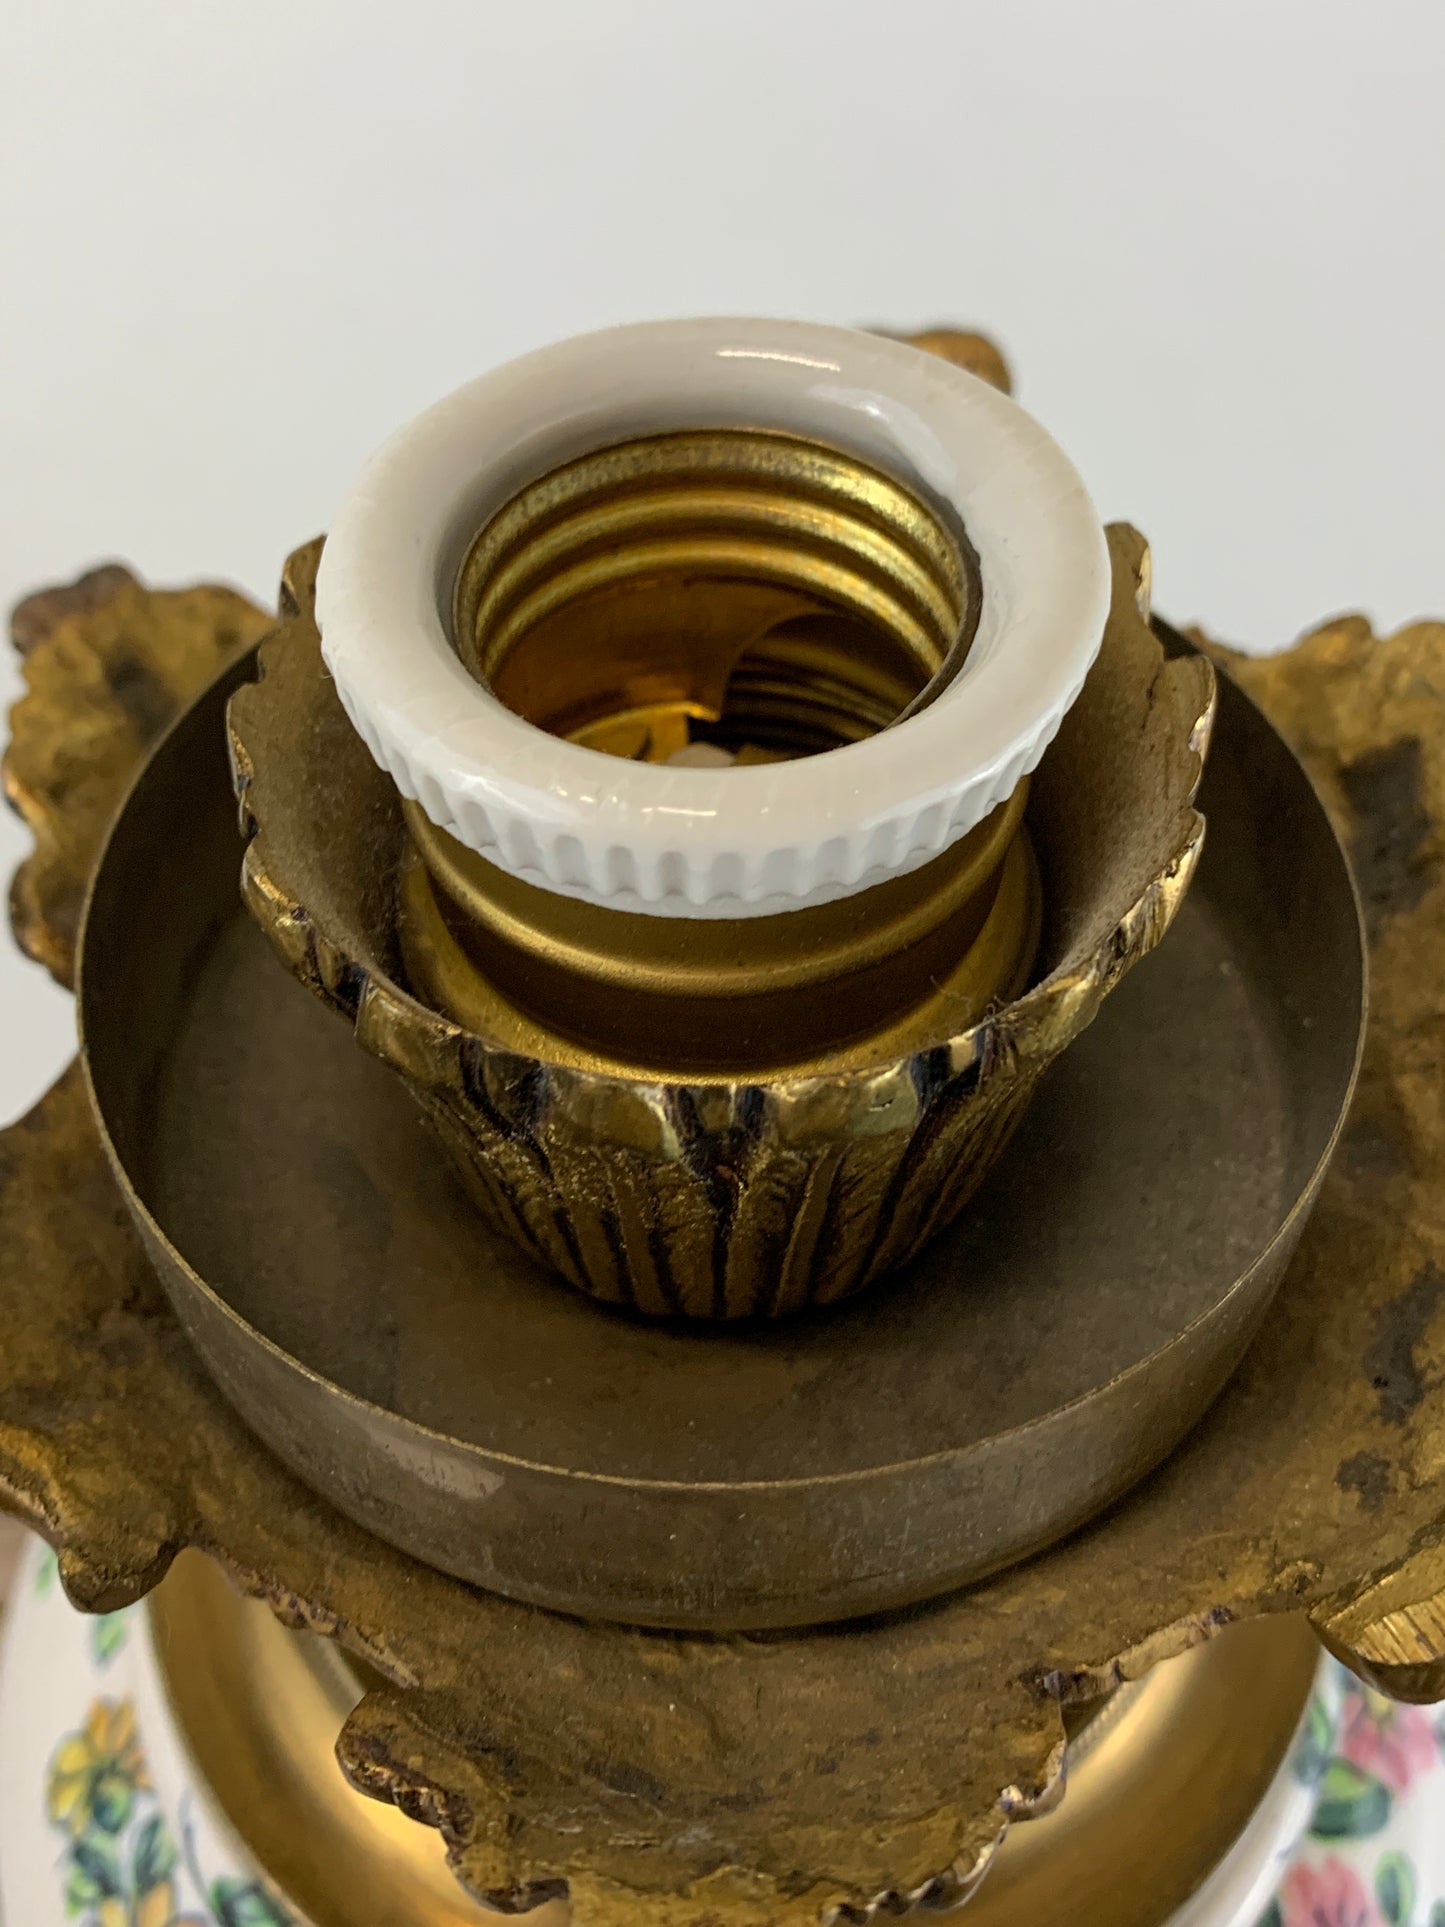 Cast Brass and Ceramic Antique Lamp